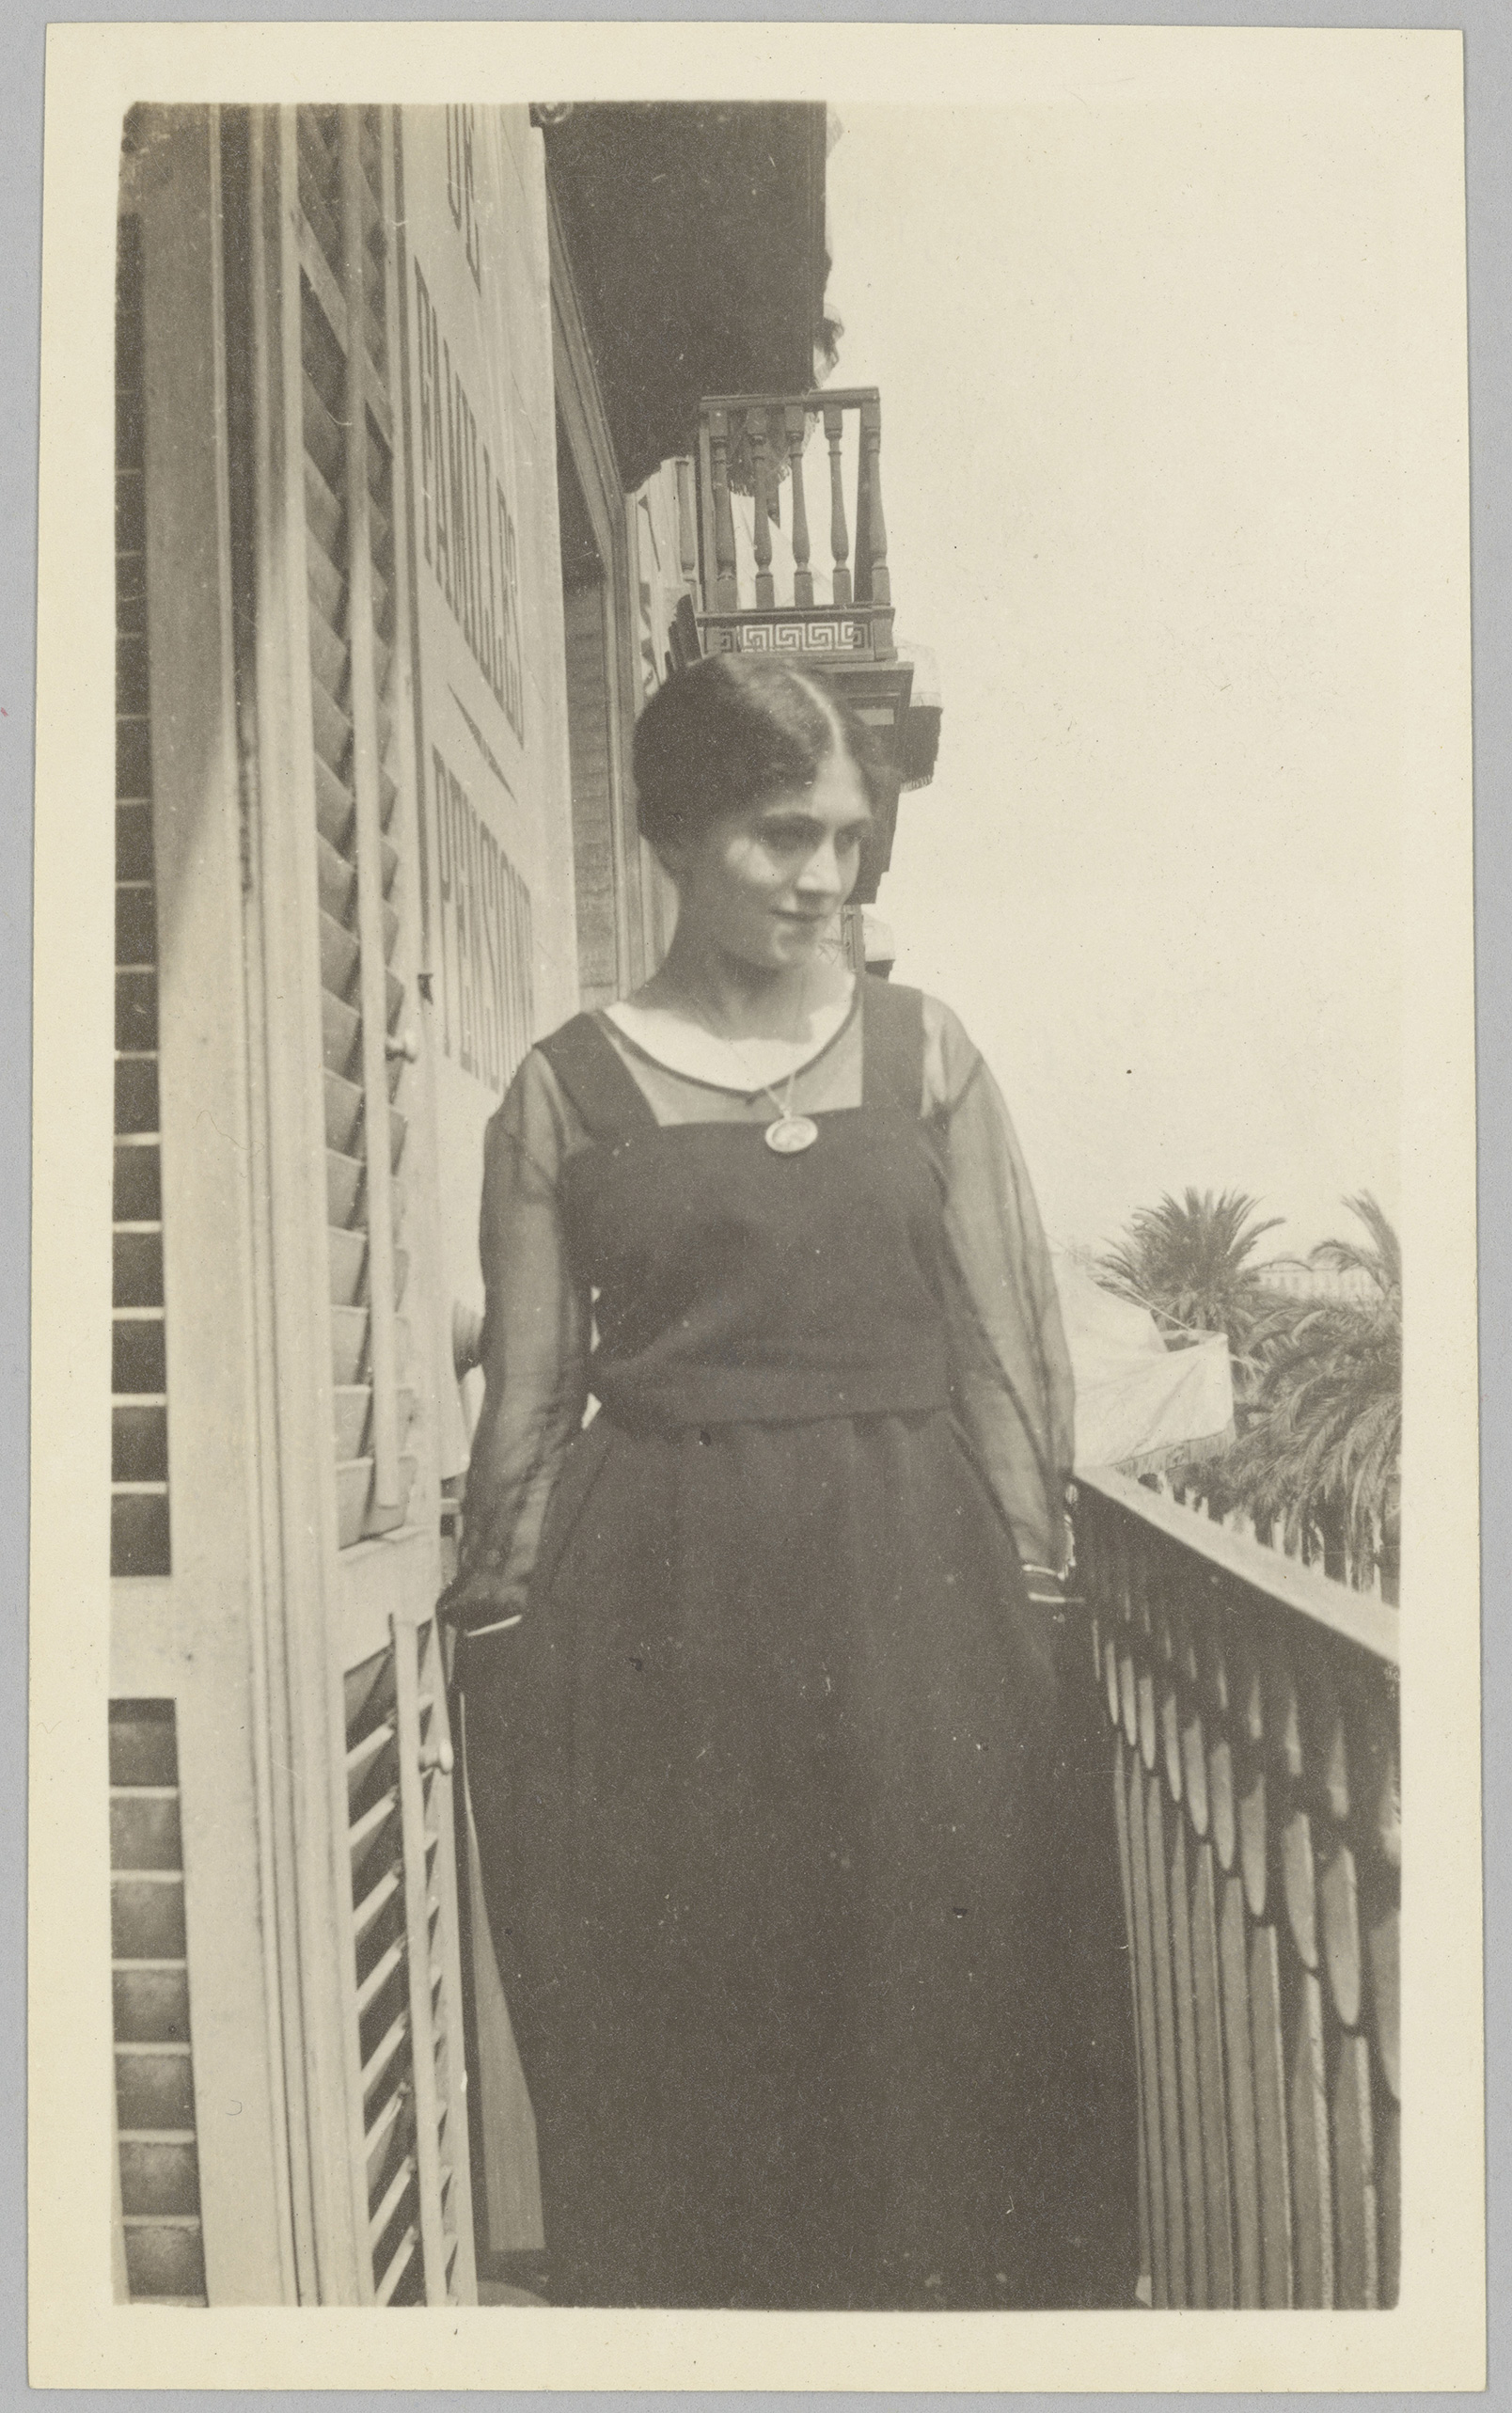 Picasso - Olga Khokhlova sur le balcon de l'hôtel Ranzini, Barcelone, en 1917 - APPH3627(13) - 17-501606 